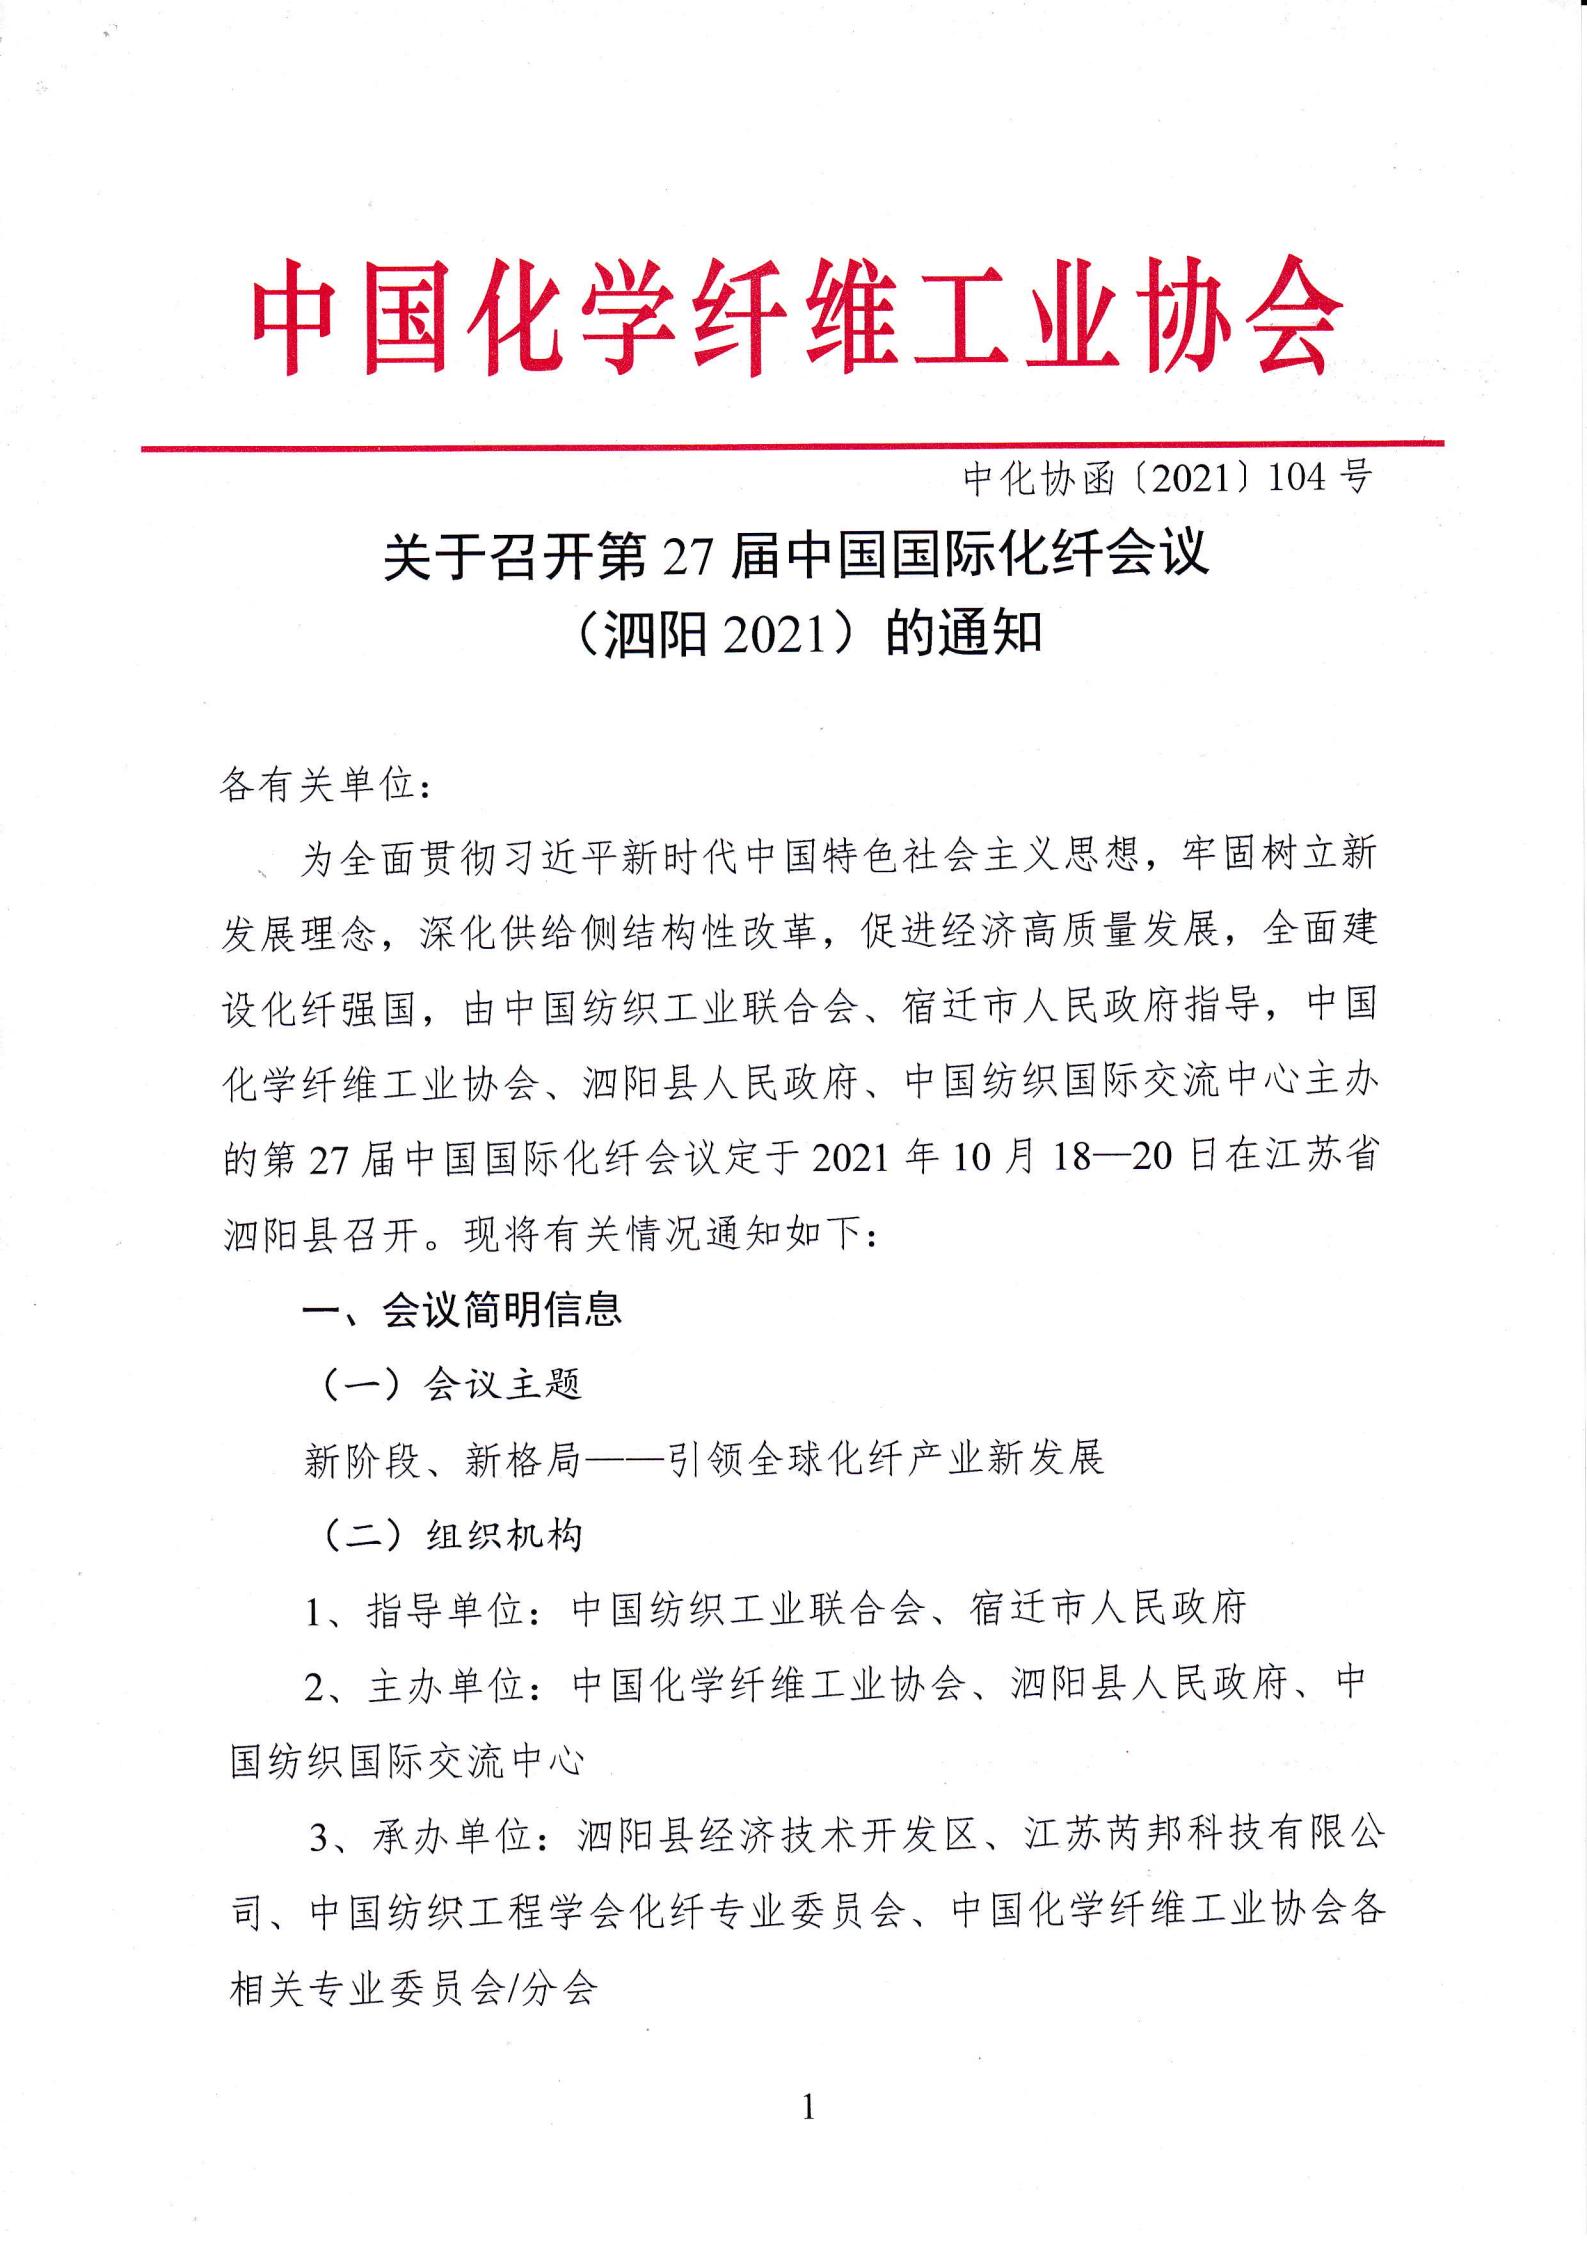 关于召开第27届中国国际化纤会议（泗阳2021）的通知_00.jpg